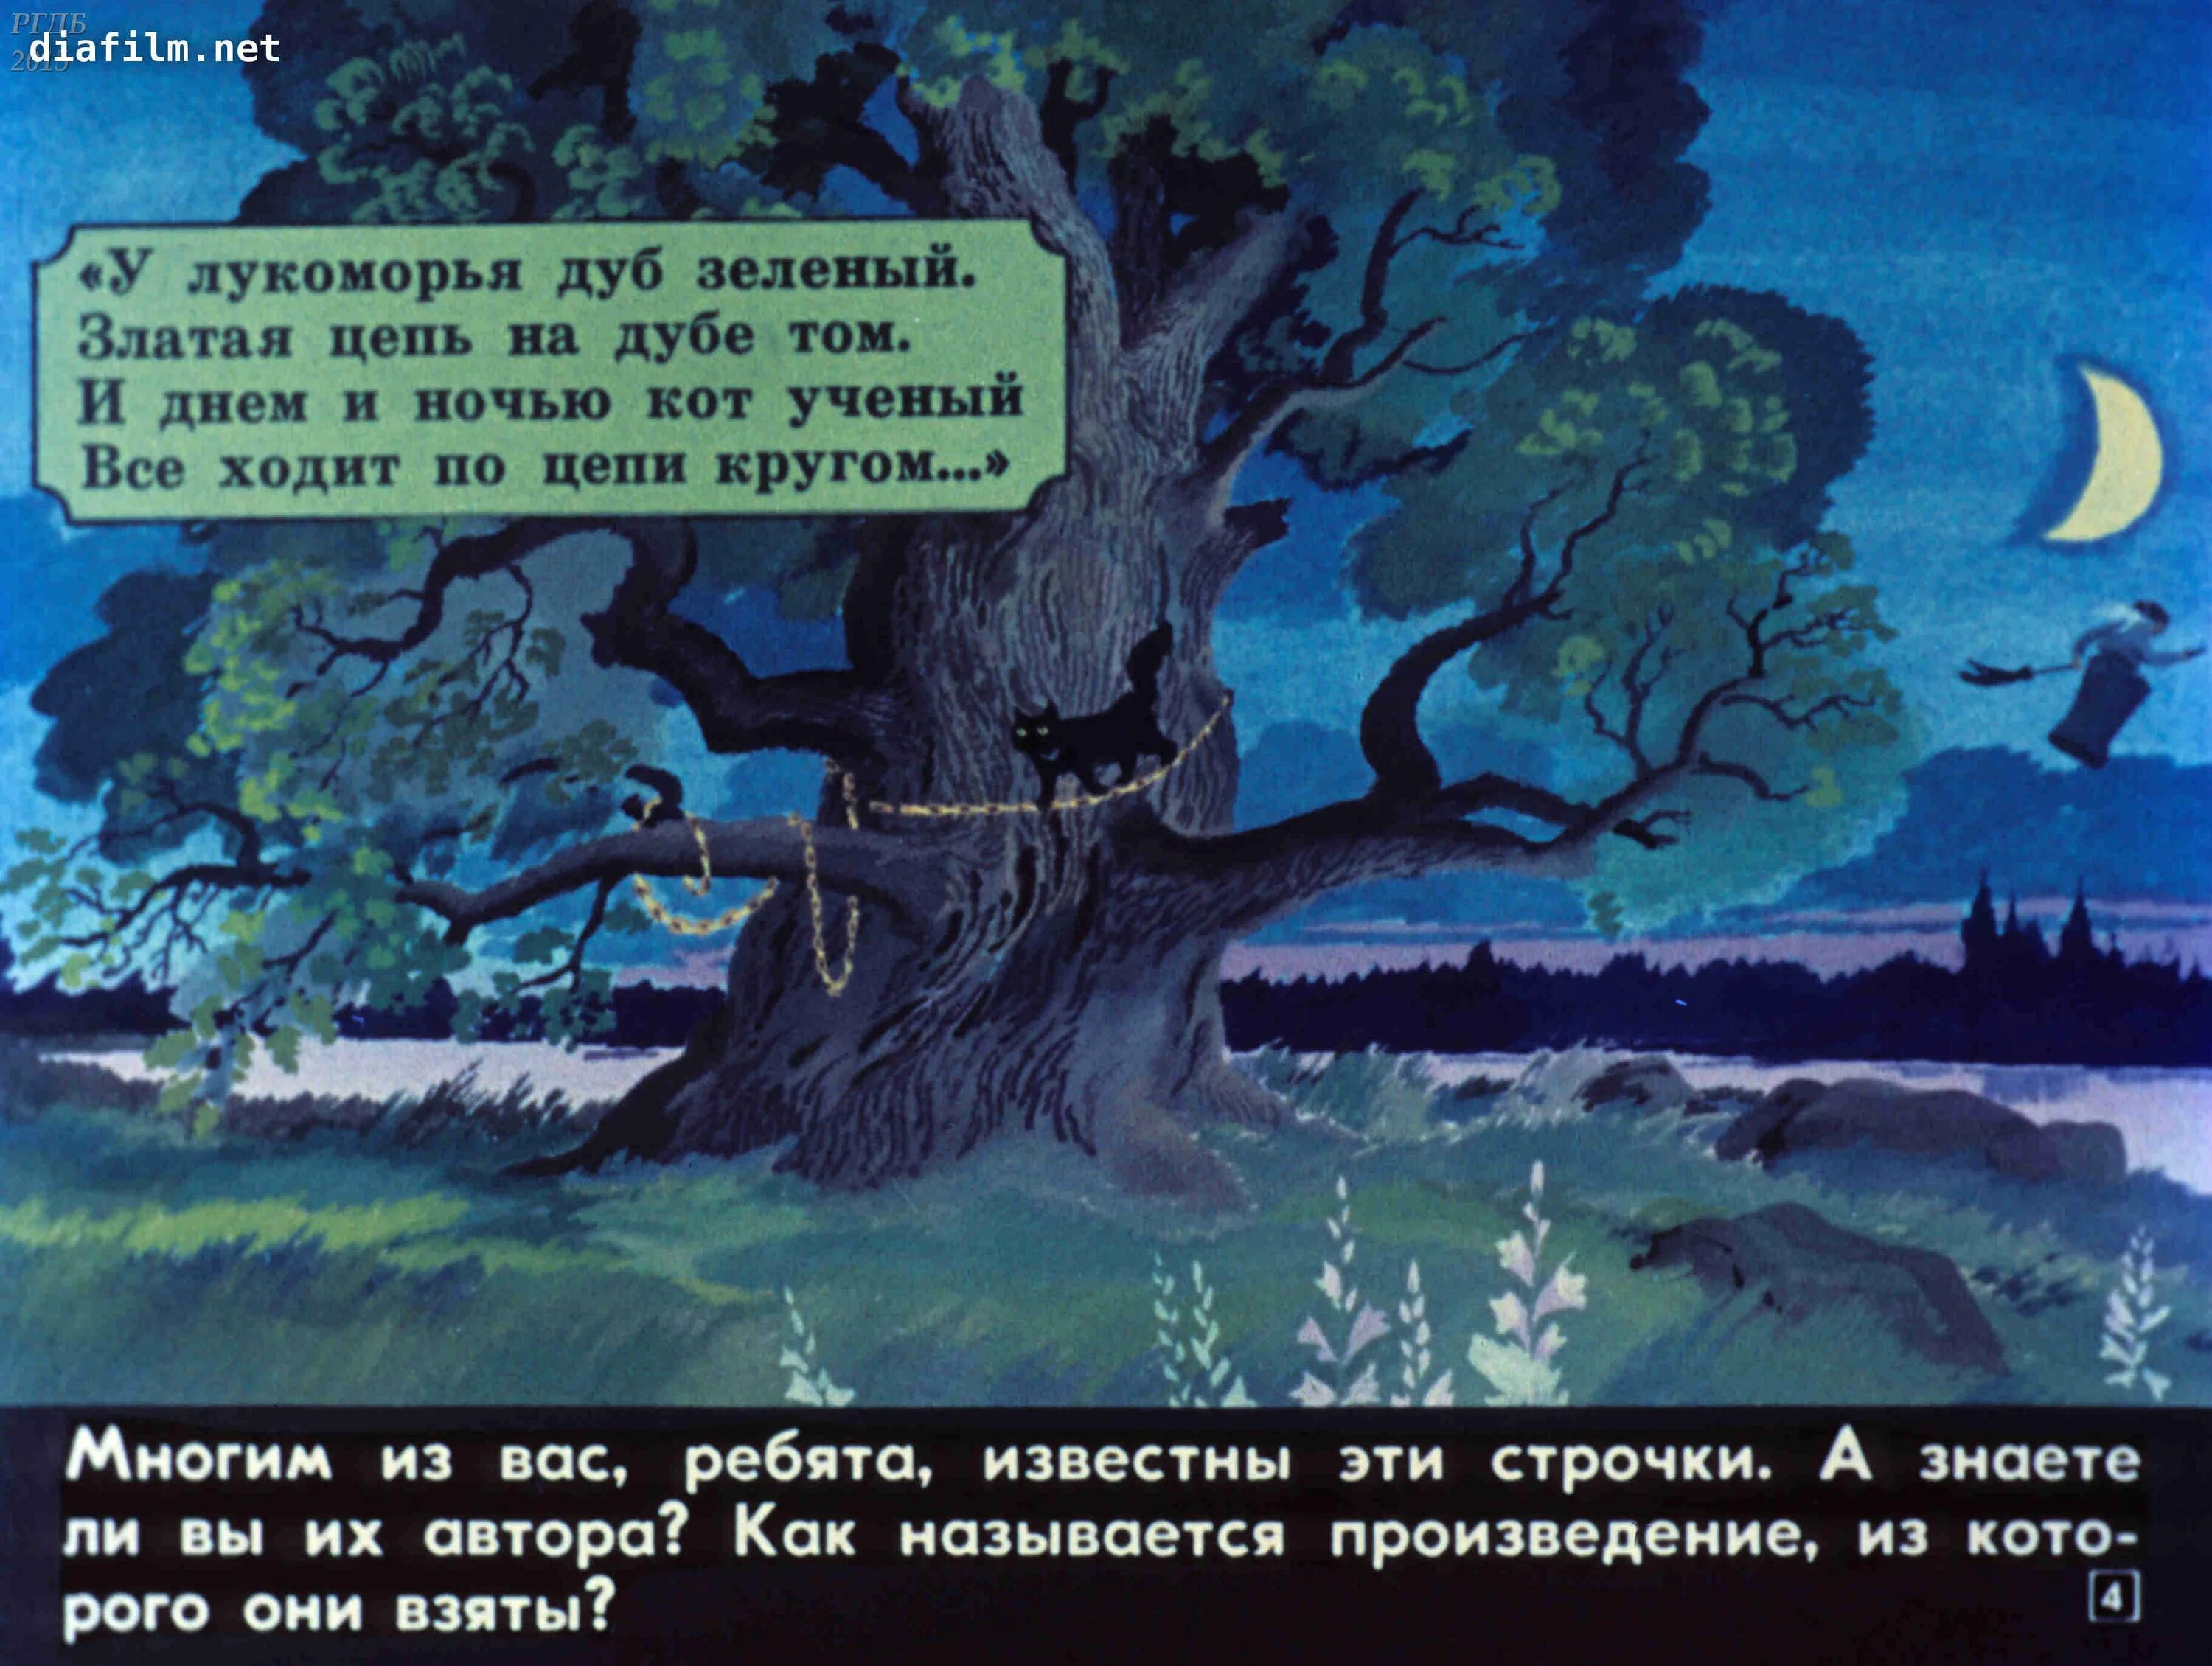 Где стоит дуб зеленый. Пушкин а.с. "у Лукоморья дуб зеленый...". Дуб зелёный златая цепь. Диафильм Лукоморье. Златая цепь на дубе.